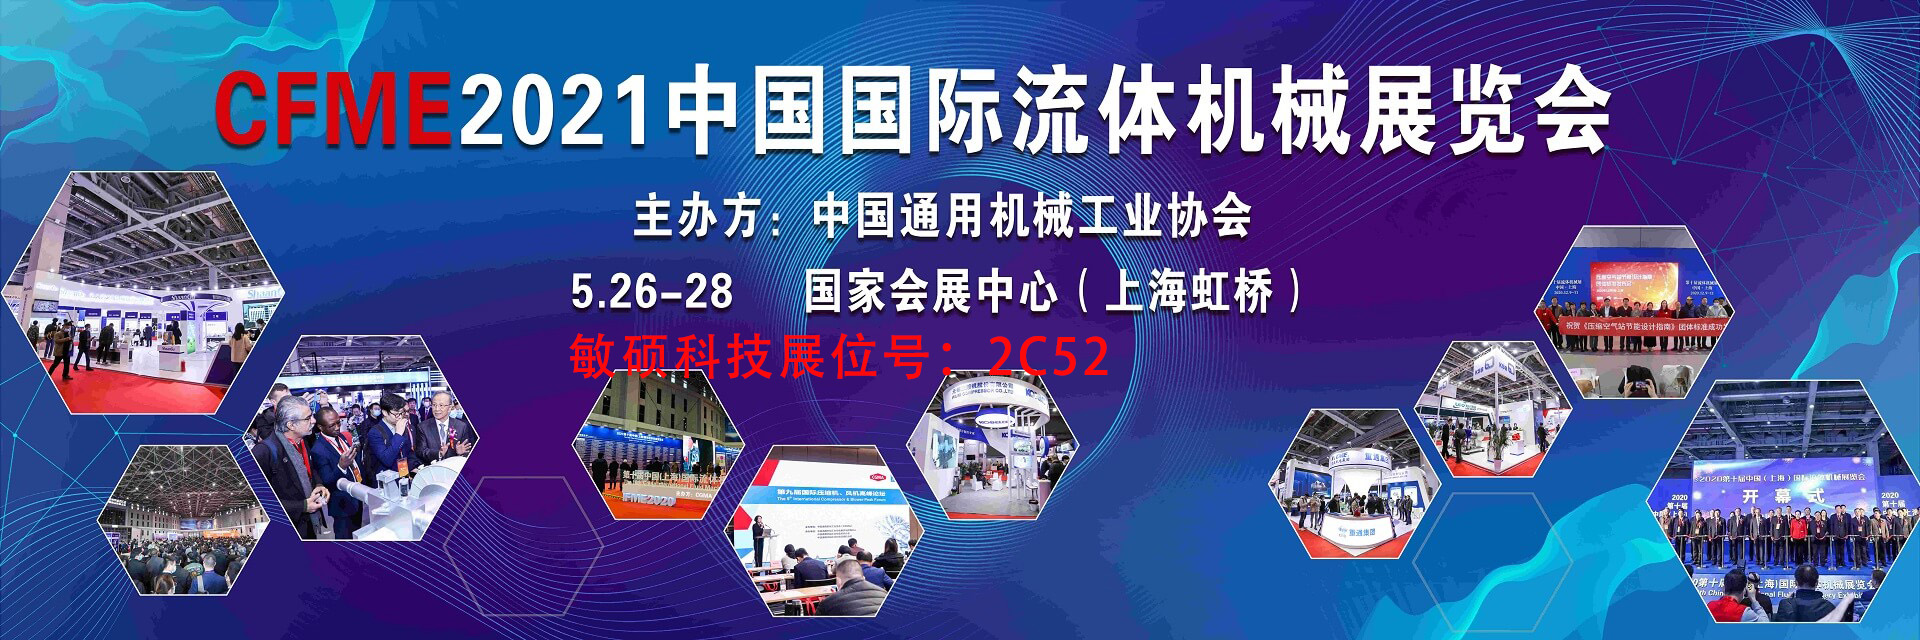 CFME 2021中国国际流体机械展览会